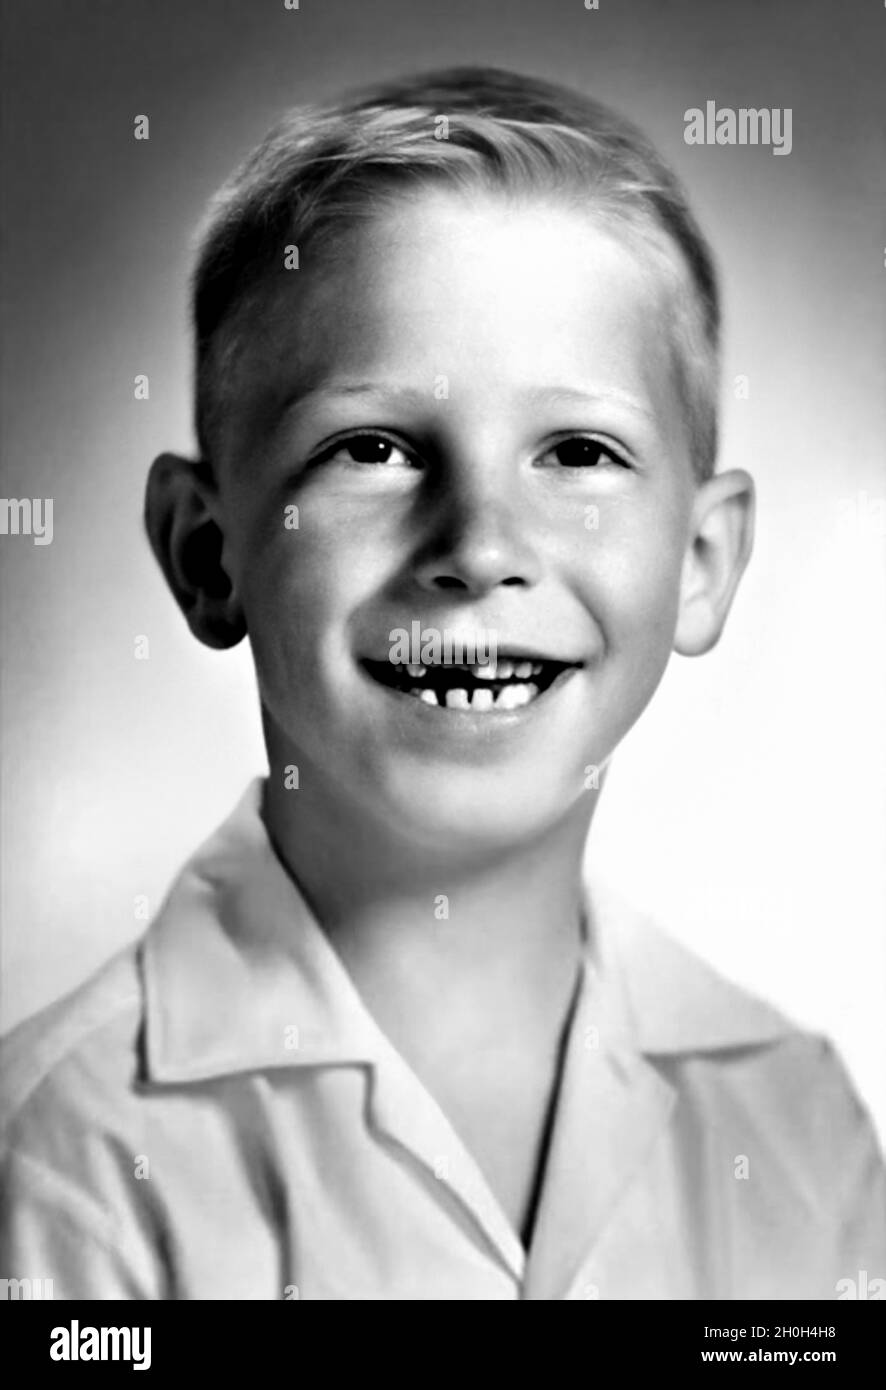 1962 CA, Etats-Unis : le célèbre BILL GATES ( bo?rn à Seattle, 28 octobre 1955? )quand était un jeune garçon de 7 ans.Photographe inconnu .Magnat américain , investisseur et propriétaire de médias fondateur de WINDOWS MICROSOFT Company .Photographe inconnu .- INFORMATICA - INFORMATICO - INFORMATIQUE - INFORMATIQUE - INVENTORE - INVENTEUR - HISTOIRE - FOTO STORICHE - TYCOON - personalità da bambino bambini da giovane - personnalité personnalités quand était jeune - INFANZIA - ENFANCE - BAMBINO - BAMBINI - ENFANTS - ENFANT --- ARCHIVIO GBB Banque D'Images